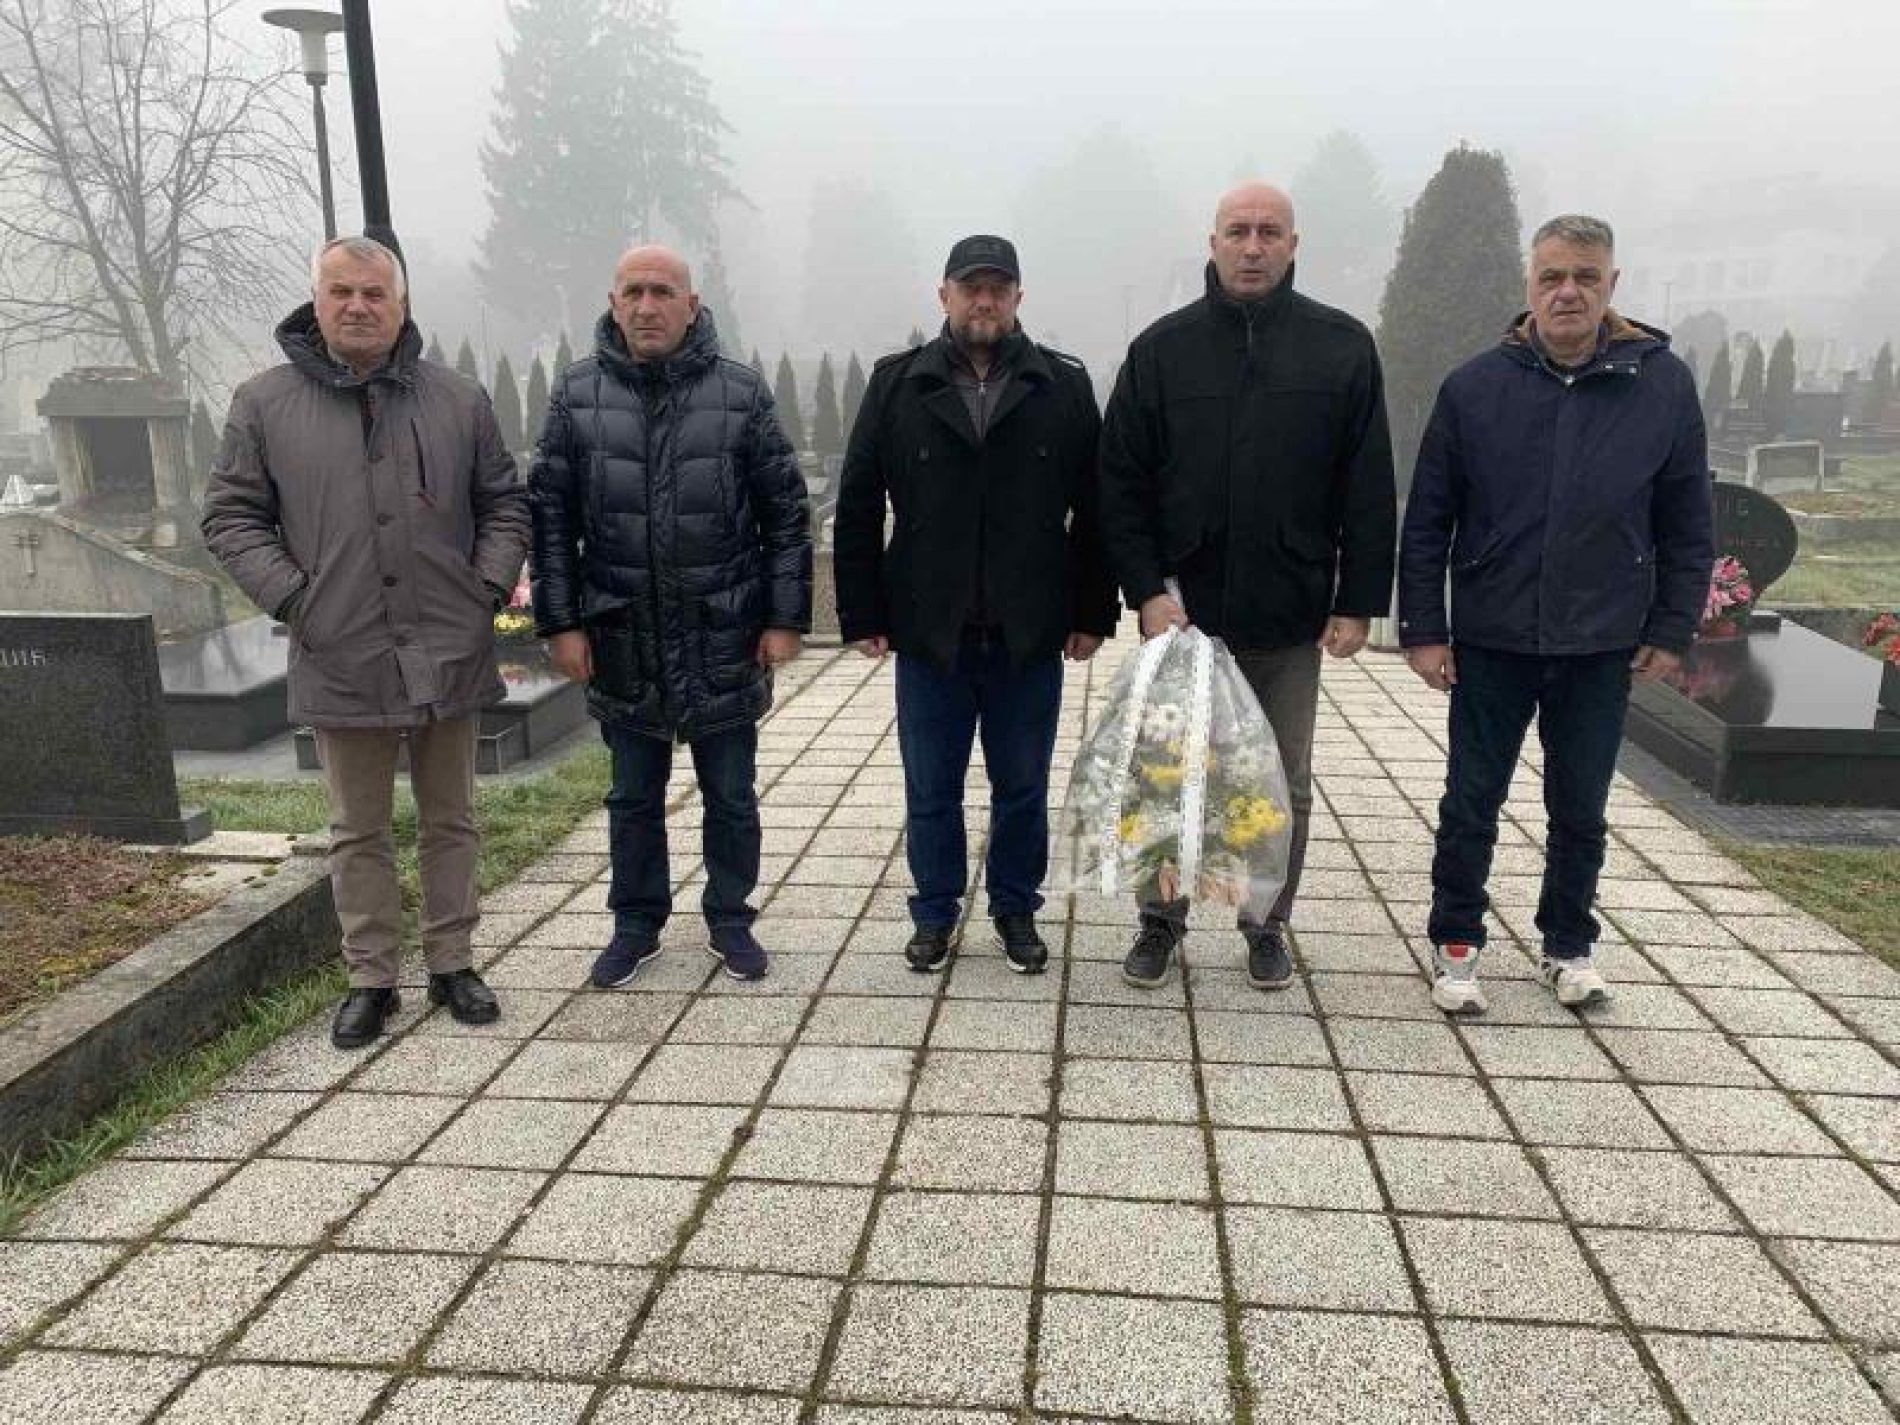 Odata počast svim poginulim pripadnicima Armije i MUP-a Republike Bosne i Hercegovine pravoslavne vjeroispovijesti